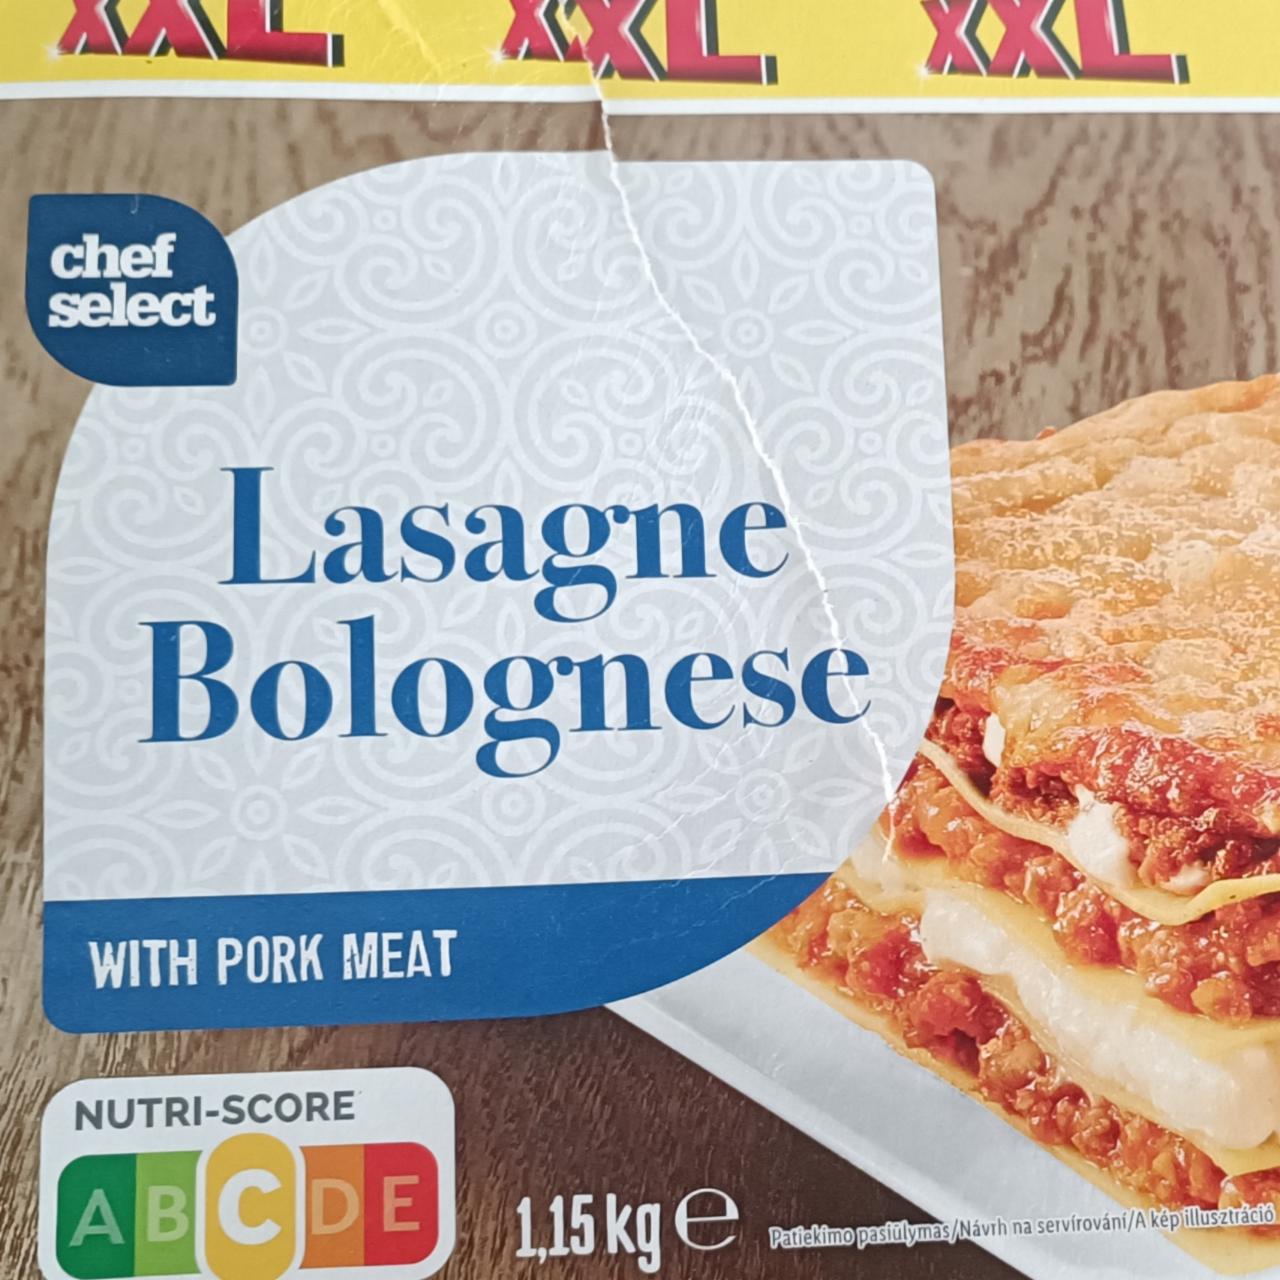 a kJ Chef kalorie, Lasagne - hodnoty nutriční with Bolognese pork Select